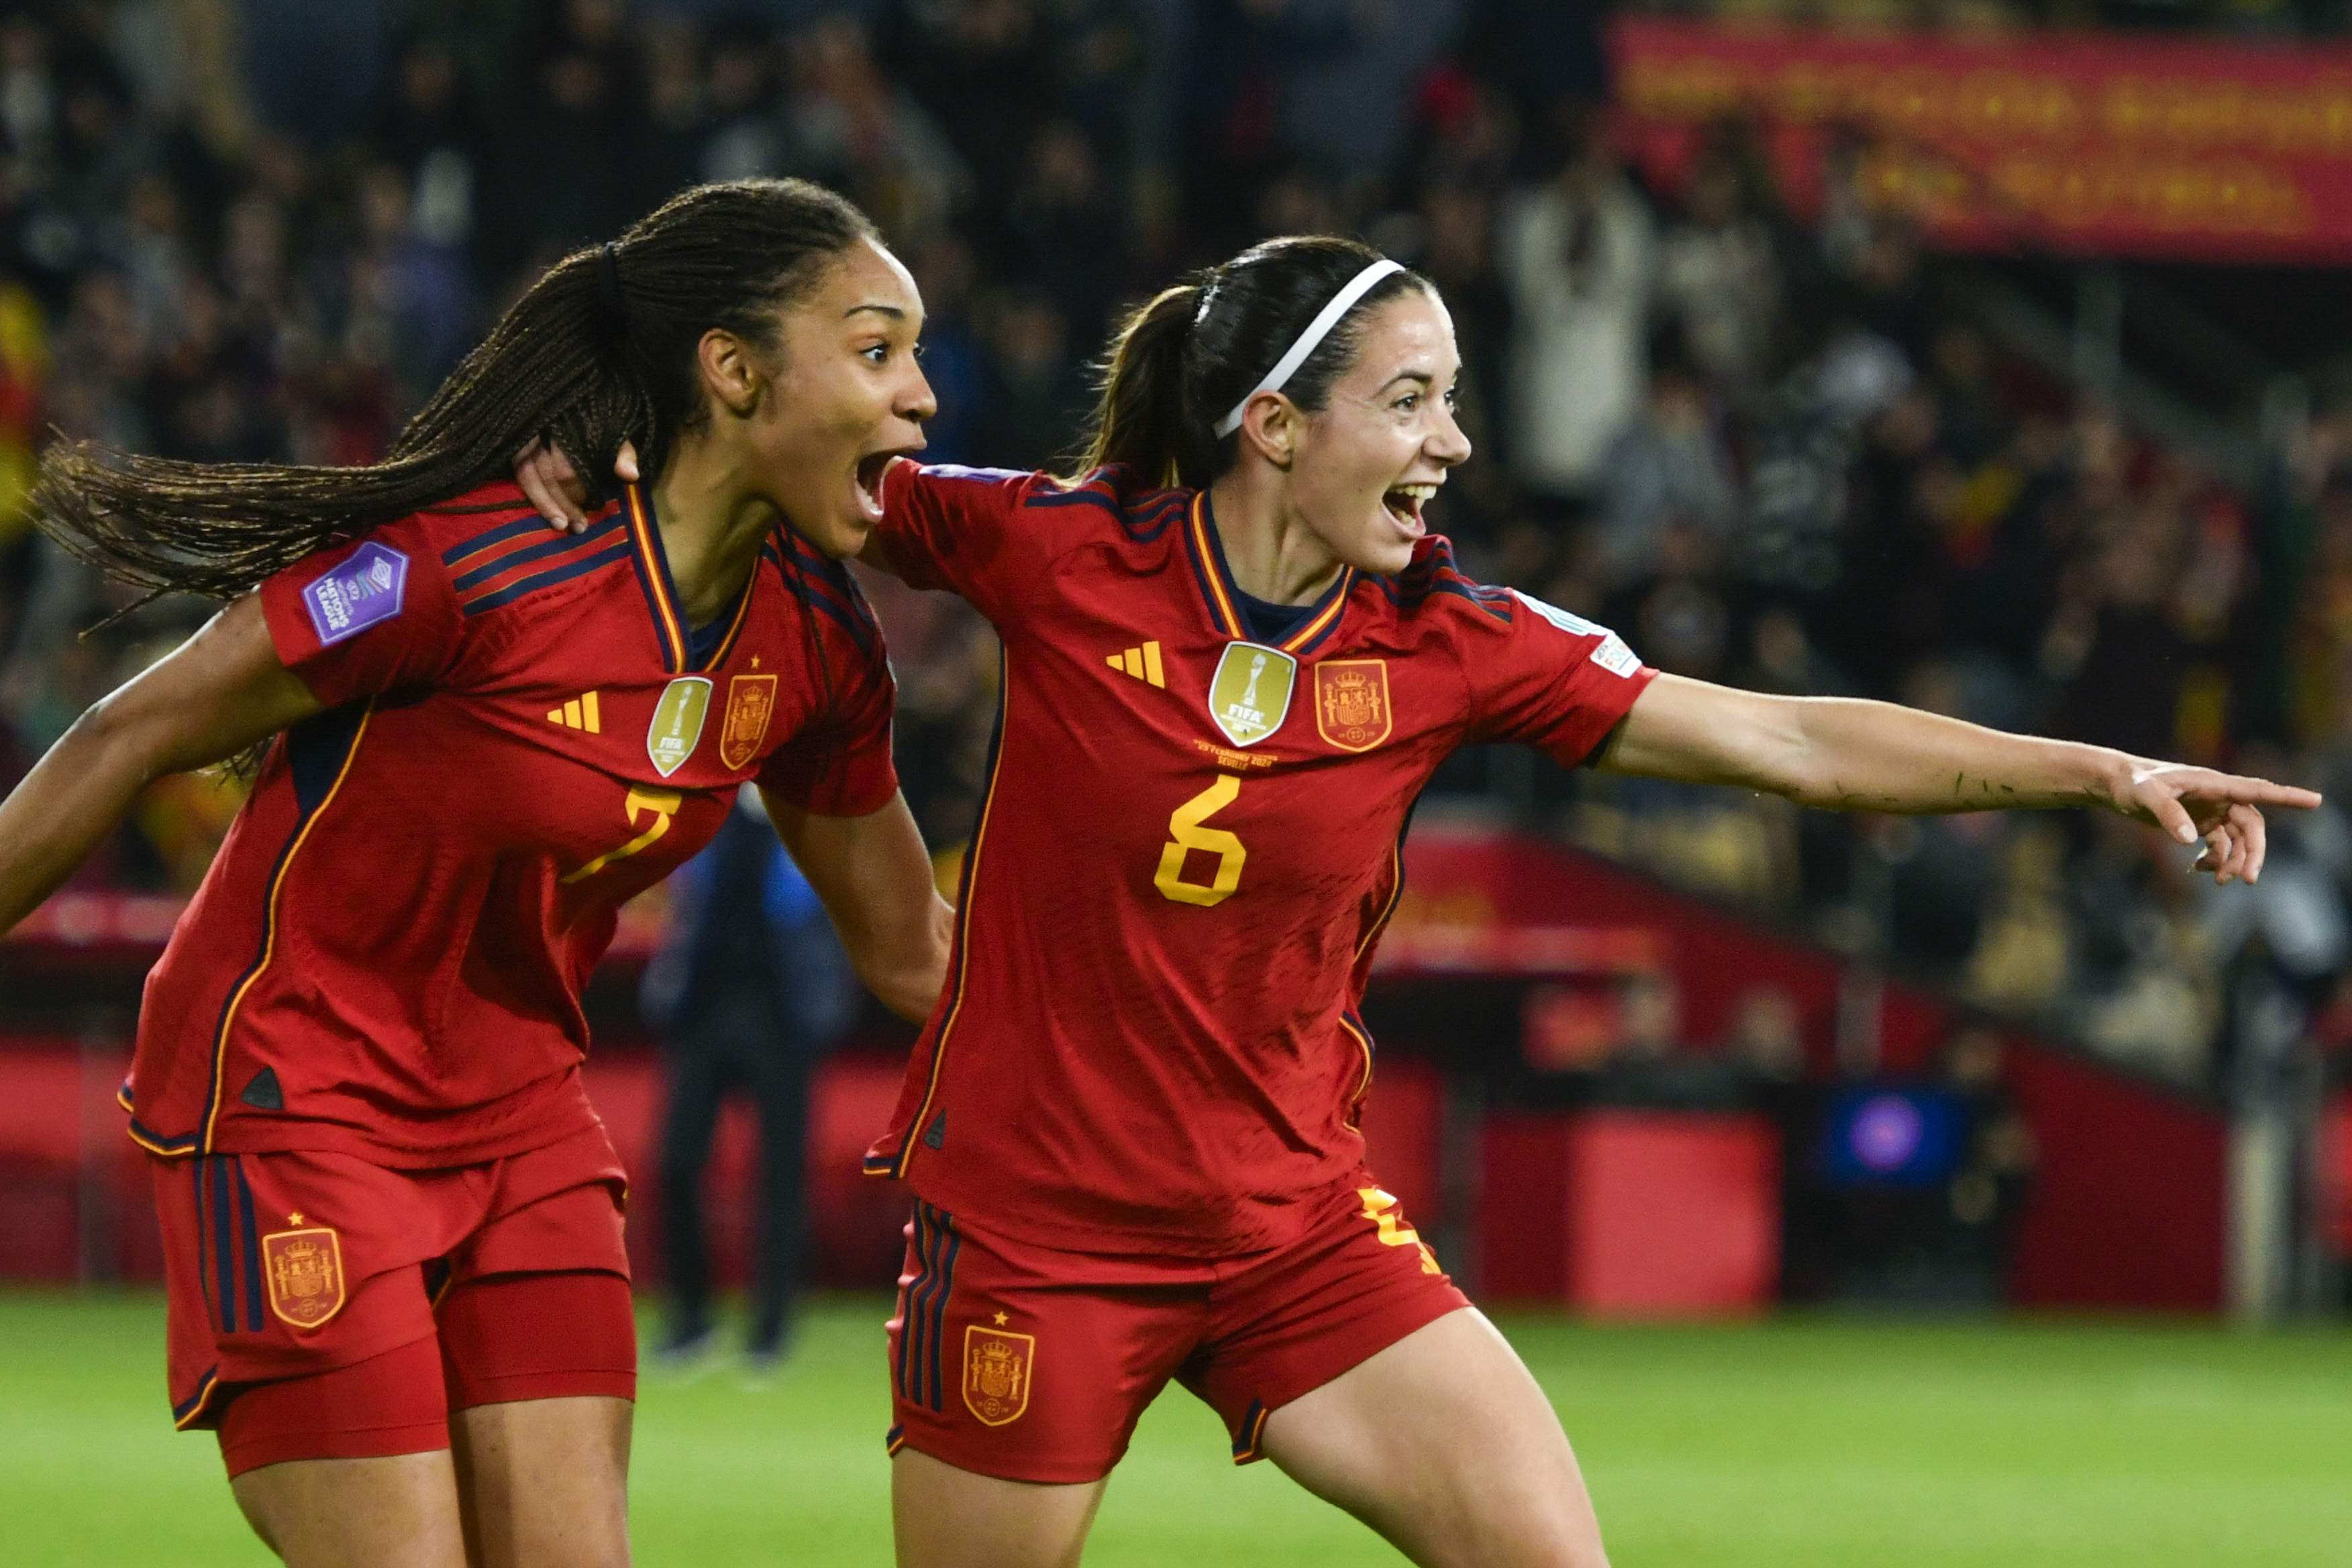 La selección española femenina golea a Países Bajos (3-0) y estará en los Juegos Olímpicos de París 2024